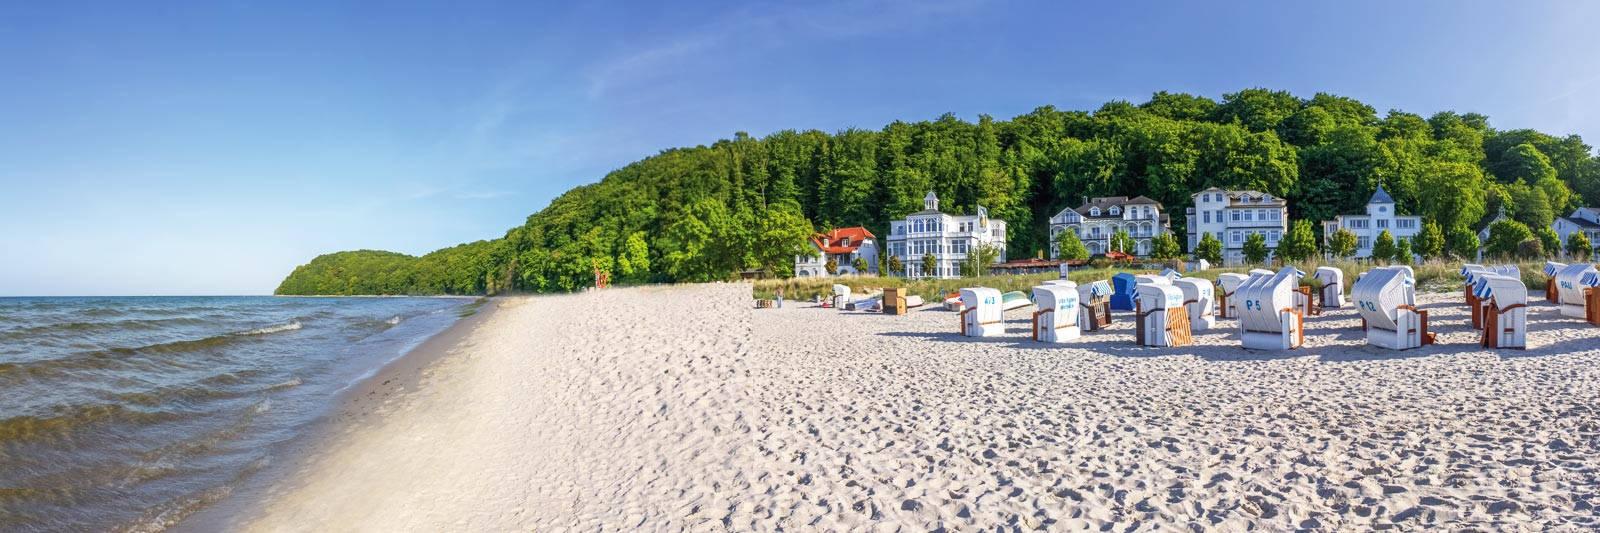 15 Ferienwohnungen und Ferienhäuser in Mühlen Eichsen - tourist-online.de